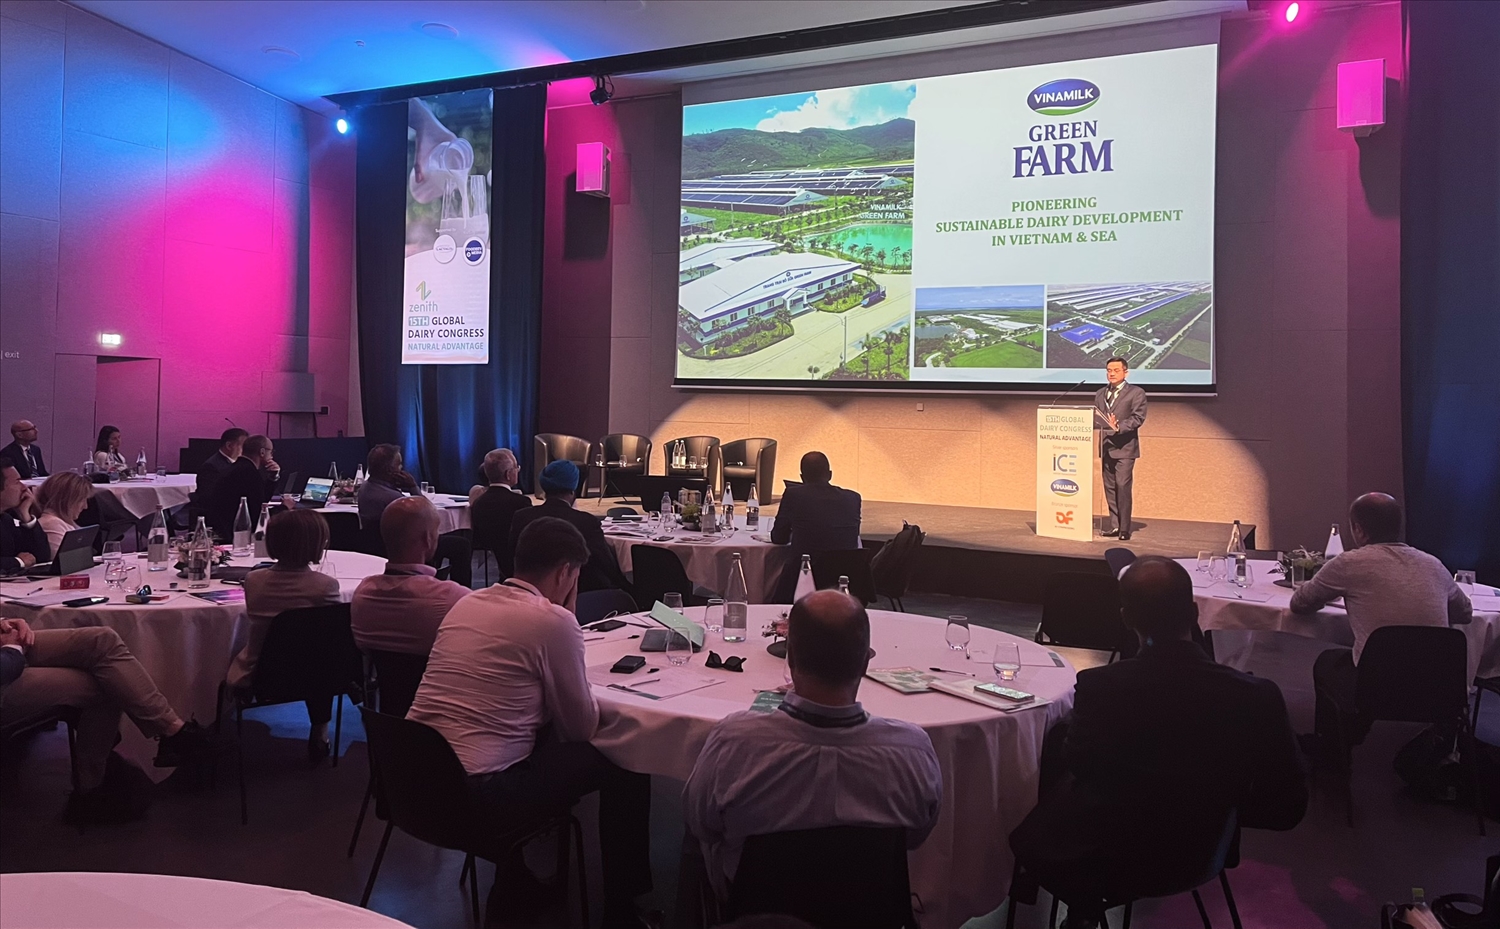 Đại diện của Vinamilk chia sẻ về câu chuyện của “Green Farm” tại hội nghị sữa toàn cầu diễn ra tại Pháp đầu tháng 6/2022